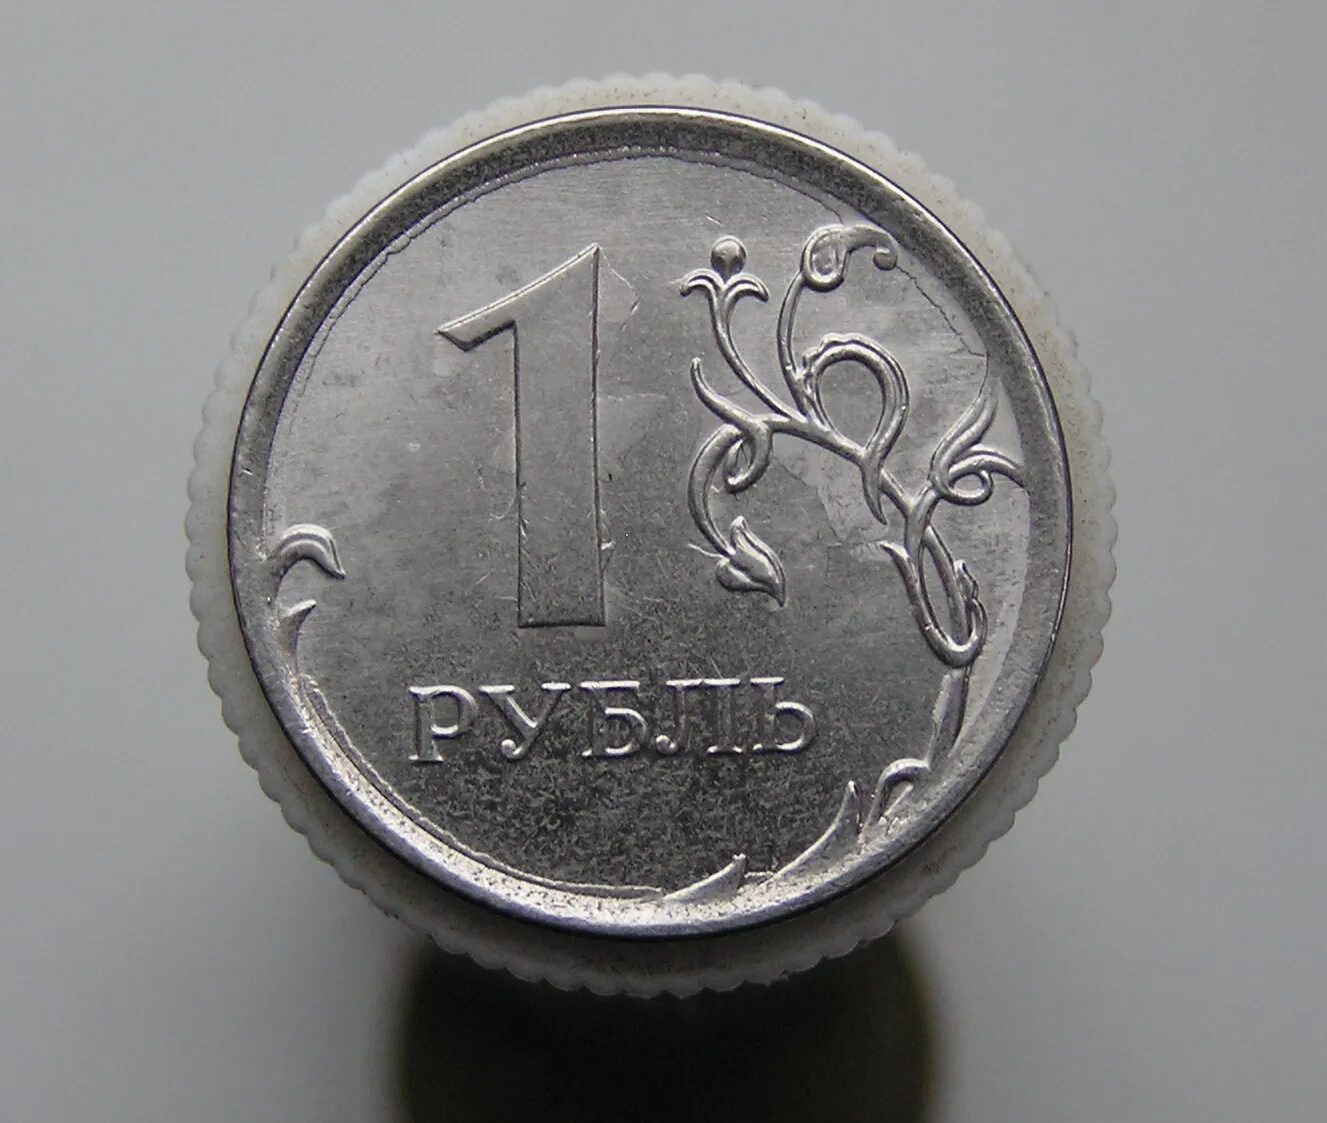 1р. Брак монеты 1 рубль. Монета 1 рубль 2014. 1 Рубль 2014 года ММД. Бракованная монета 1 рубль.